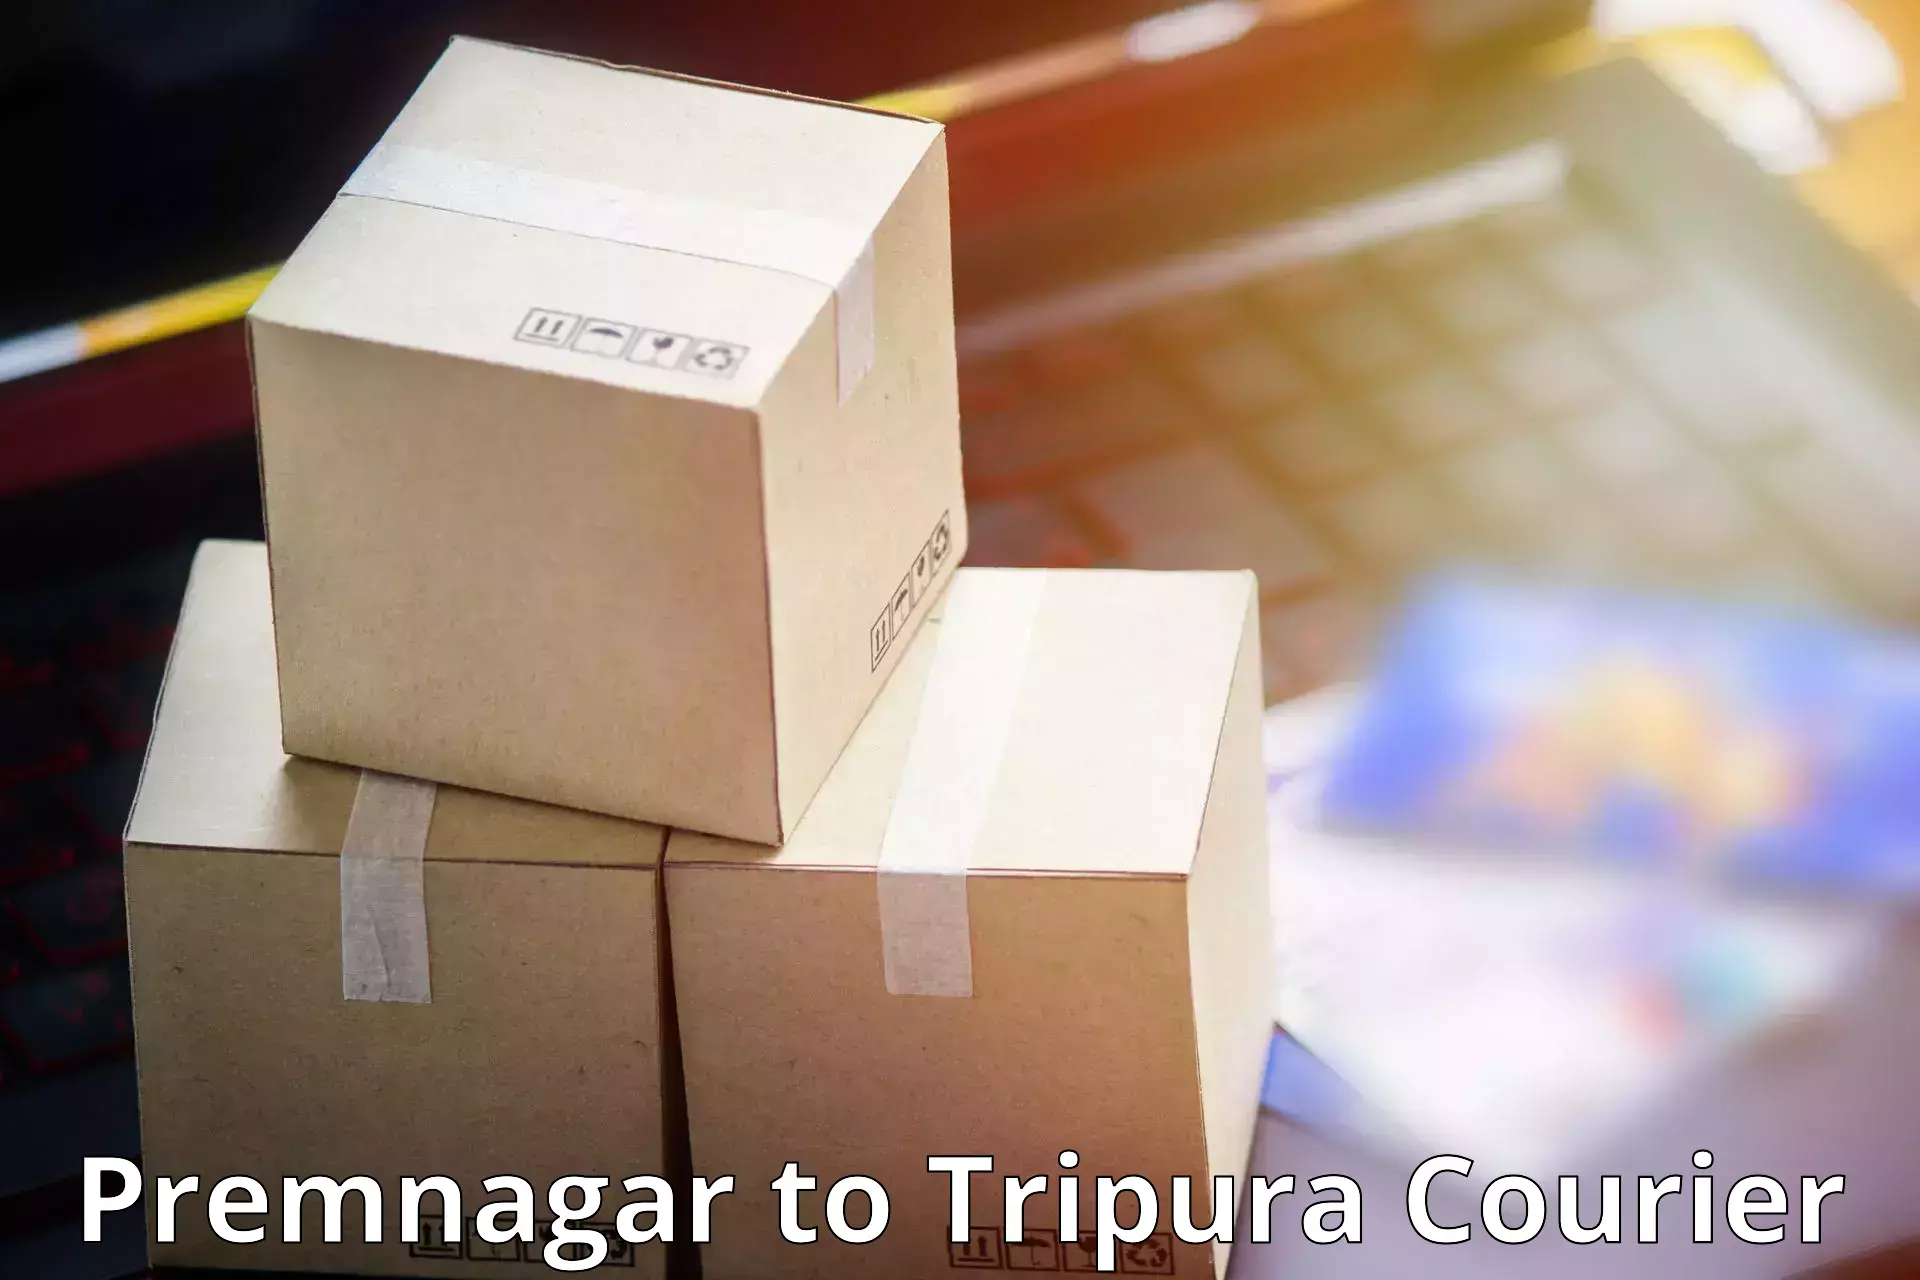 Next-generation courier services Premnagar to Kailashahar